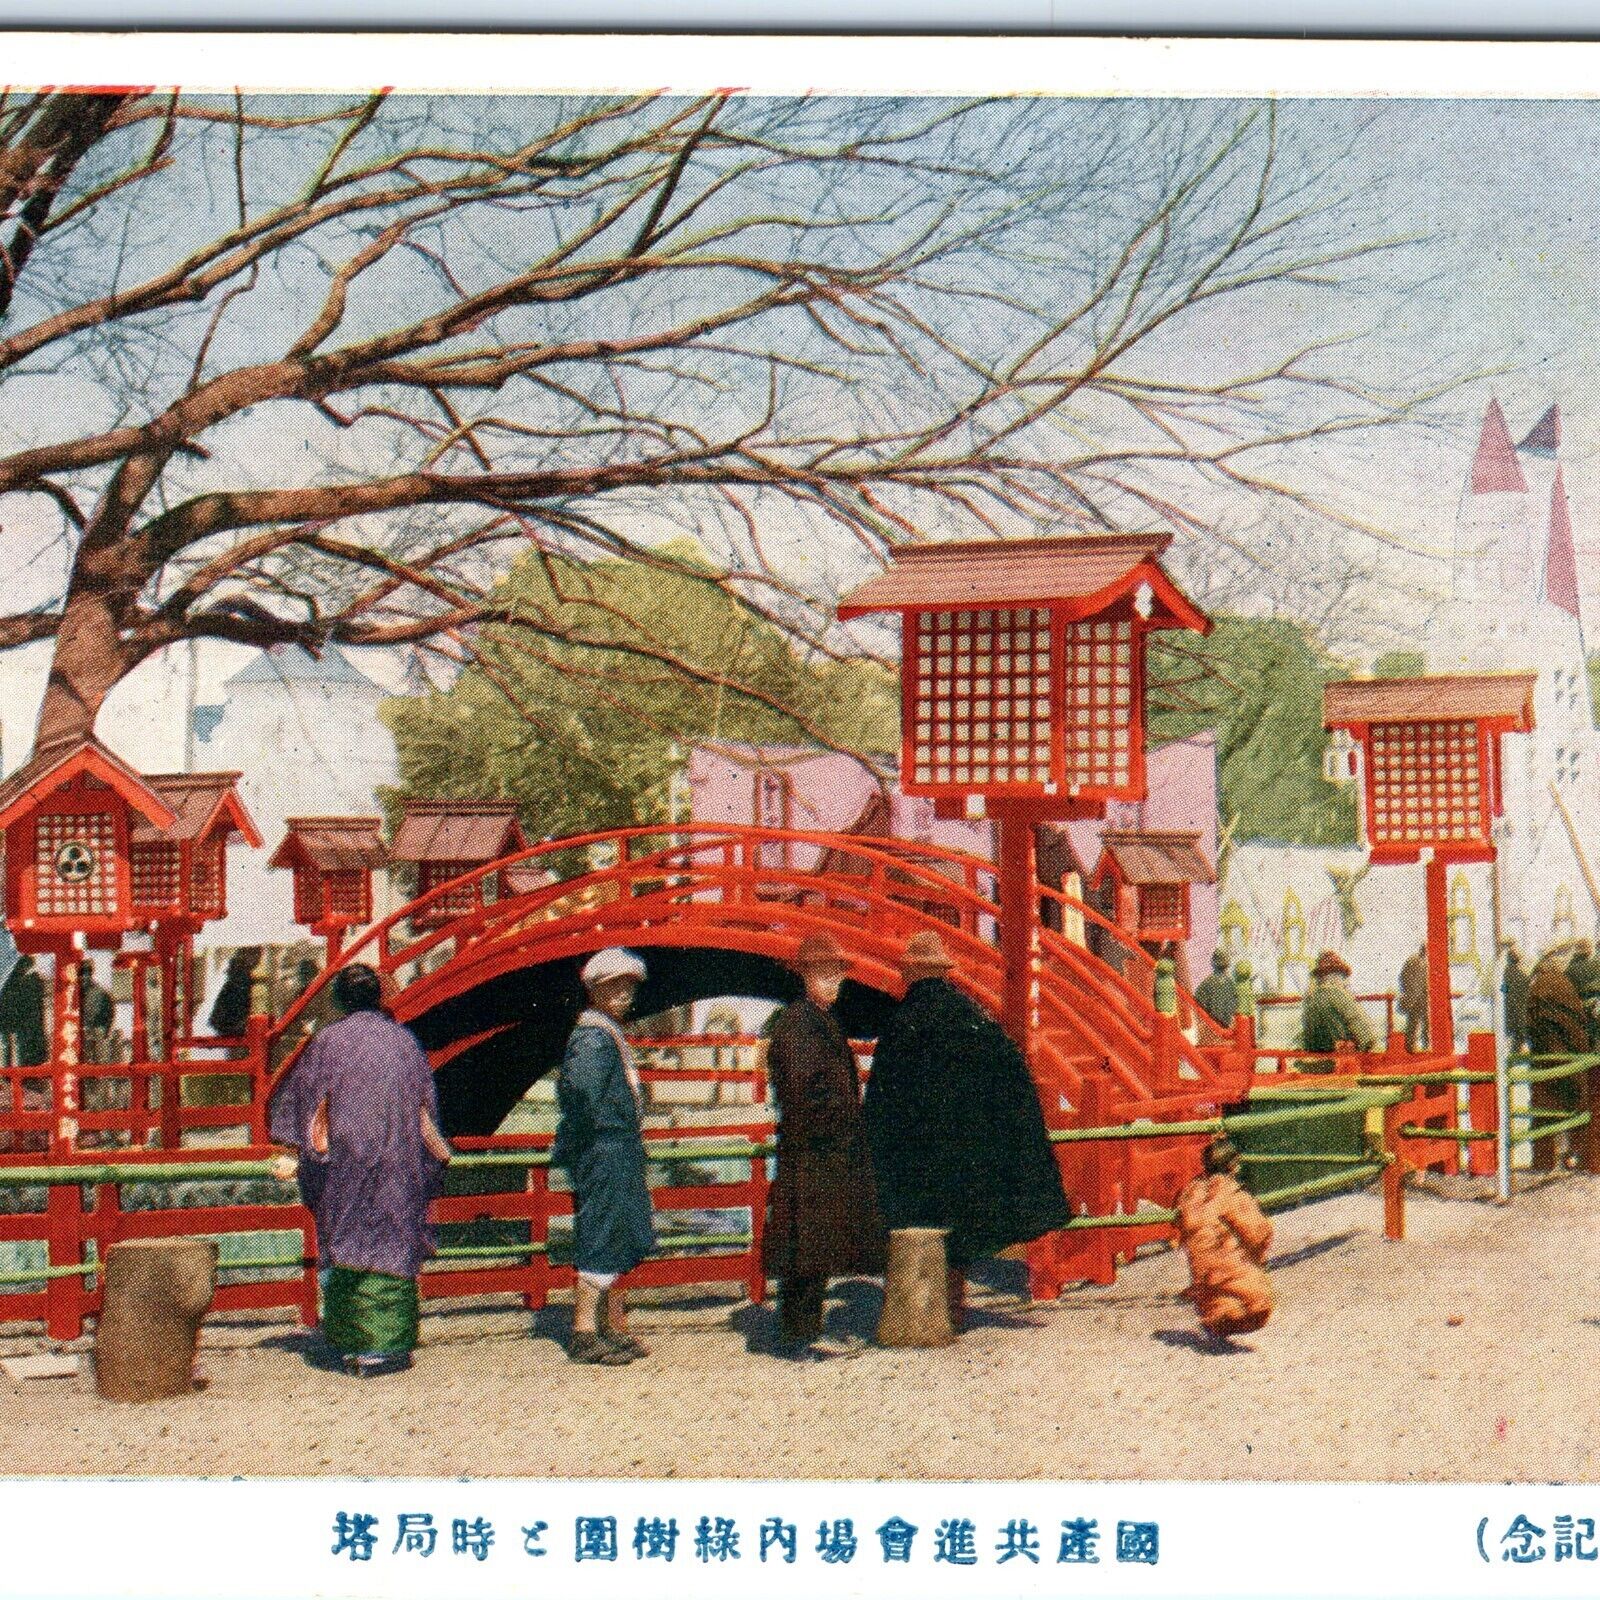 c1910s Japan Tree Garden Bridge Color Litho Photo Postcard Antique A115